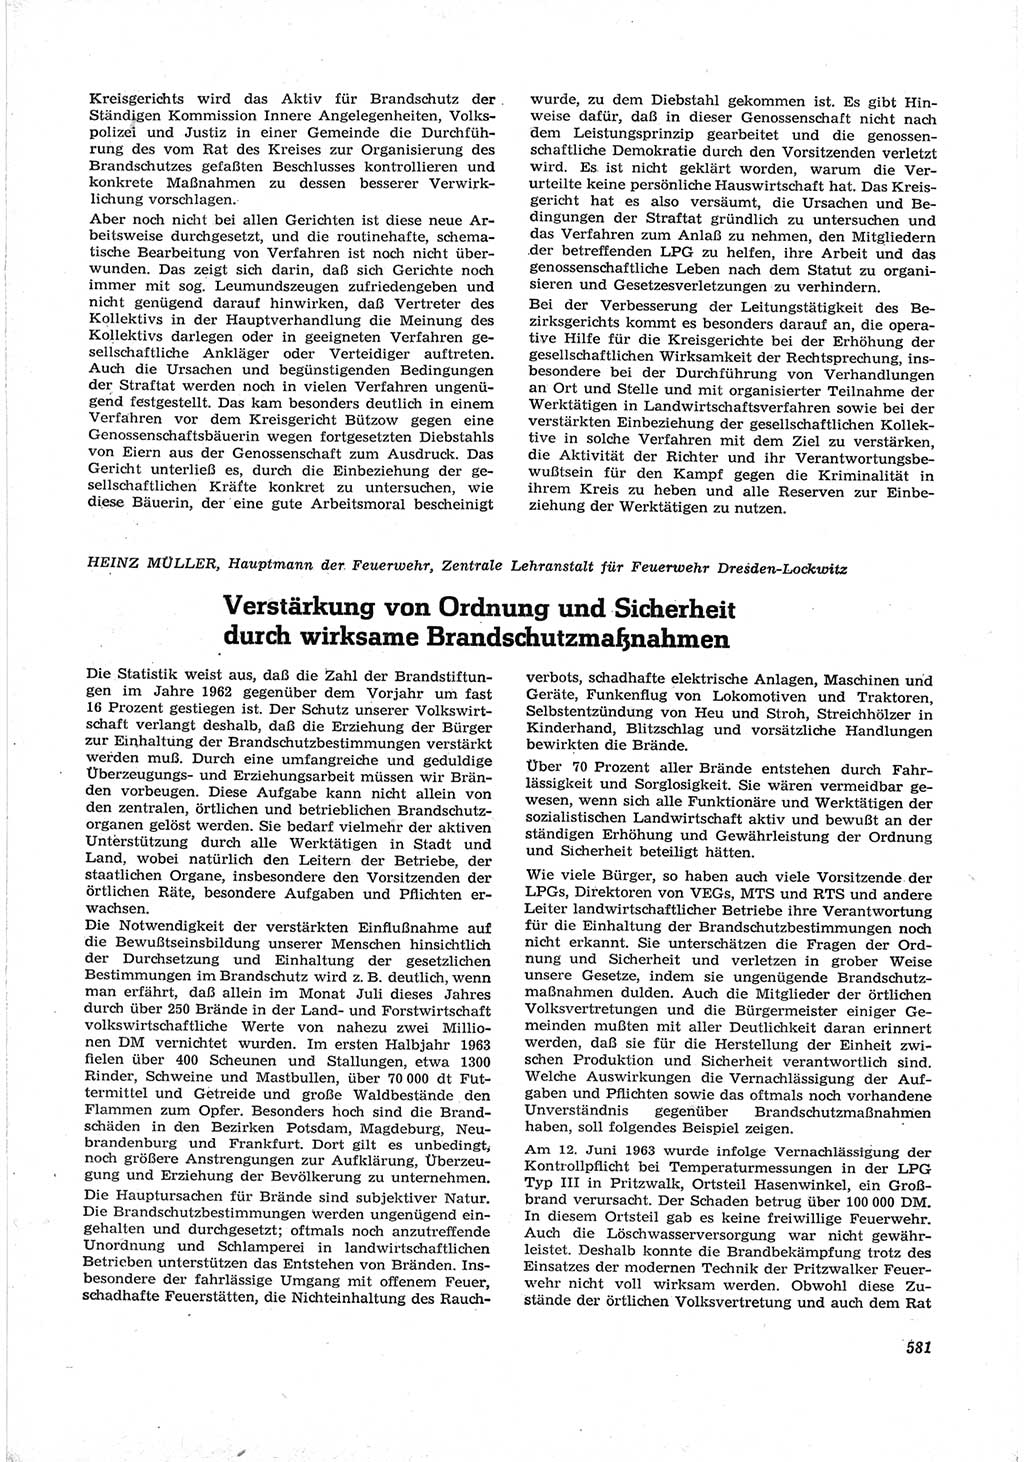 Neue Justiz (NJ), Zeitschrift für Recht und Rechtswissenschaft [Deutsche Demokratische Republik (DDR)], 17. Jahrgang 1963, Seite 581 (NJ DDR 1963, S. 581)